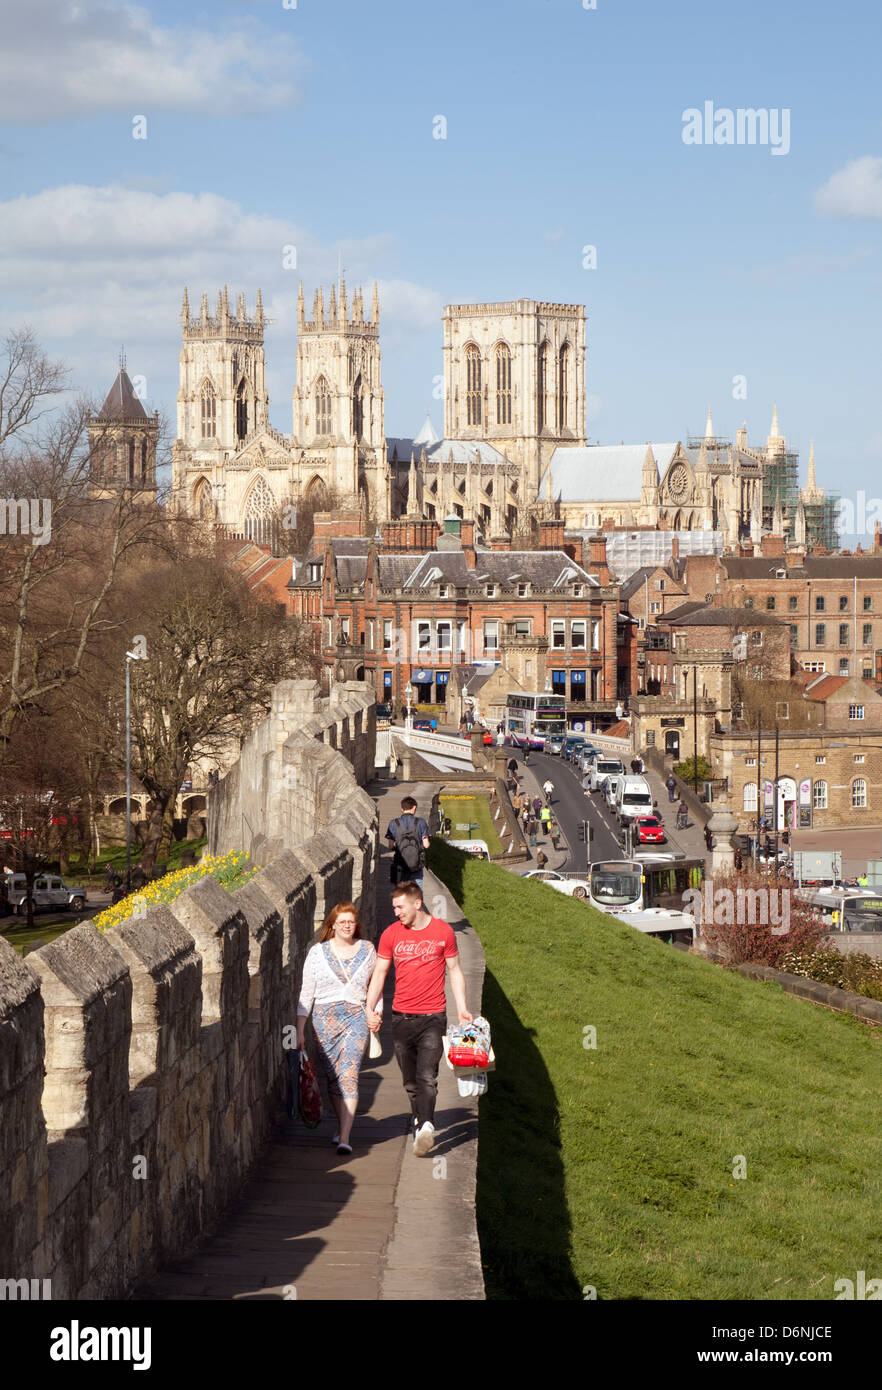 Stadtmauern von York; Menschen, die die alten Stadtmauern mit der York Minster Kathedrale im Hintergrund, York, Yorkshire UK, spazieren Stockfoto